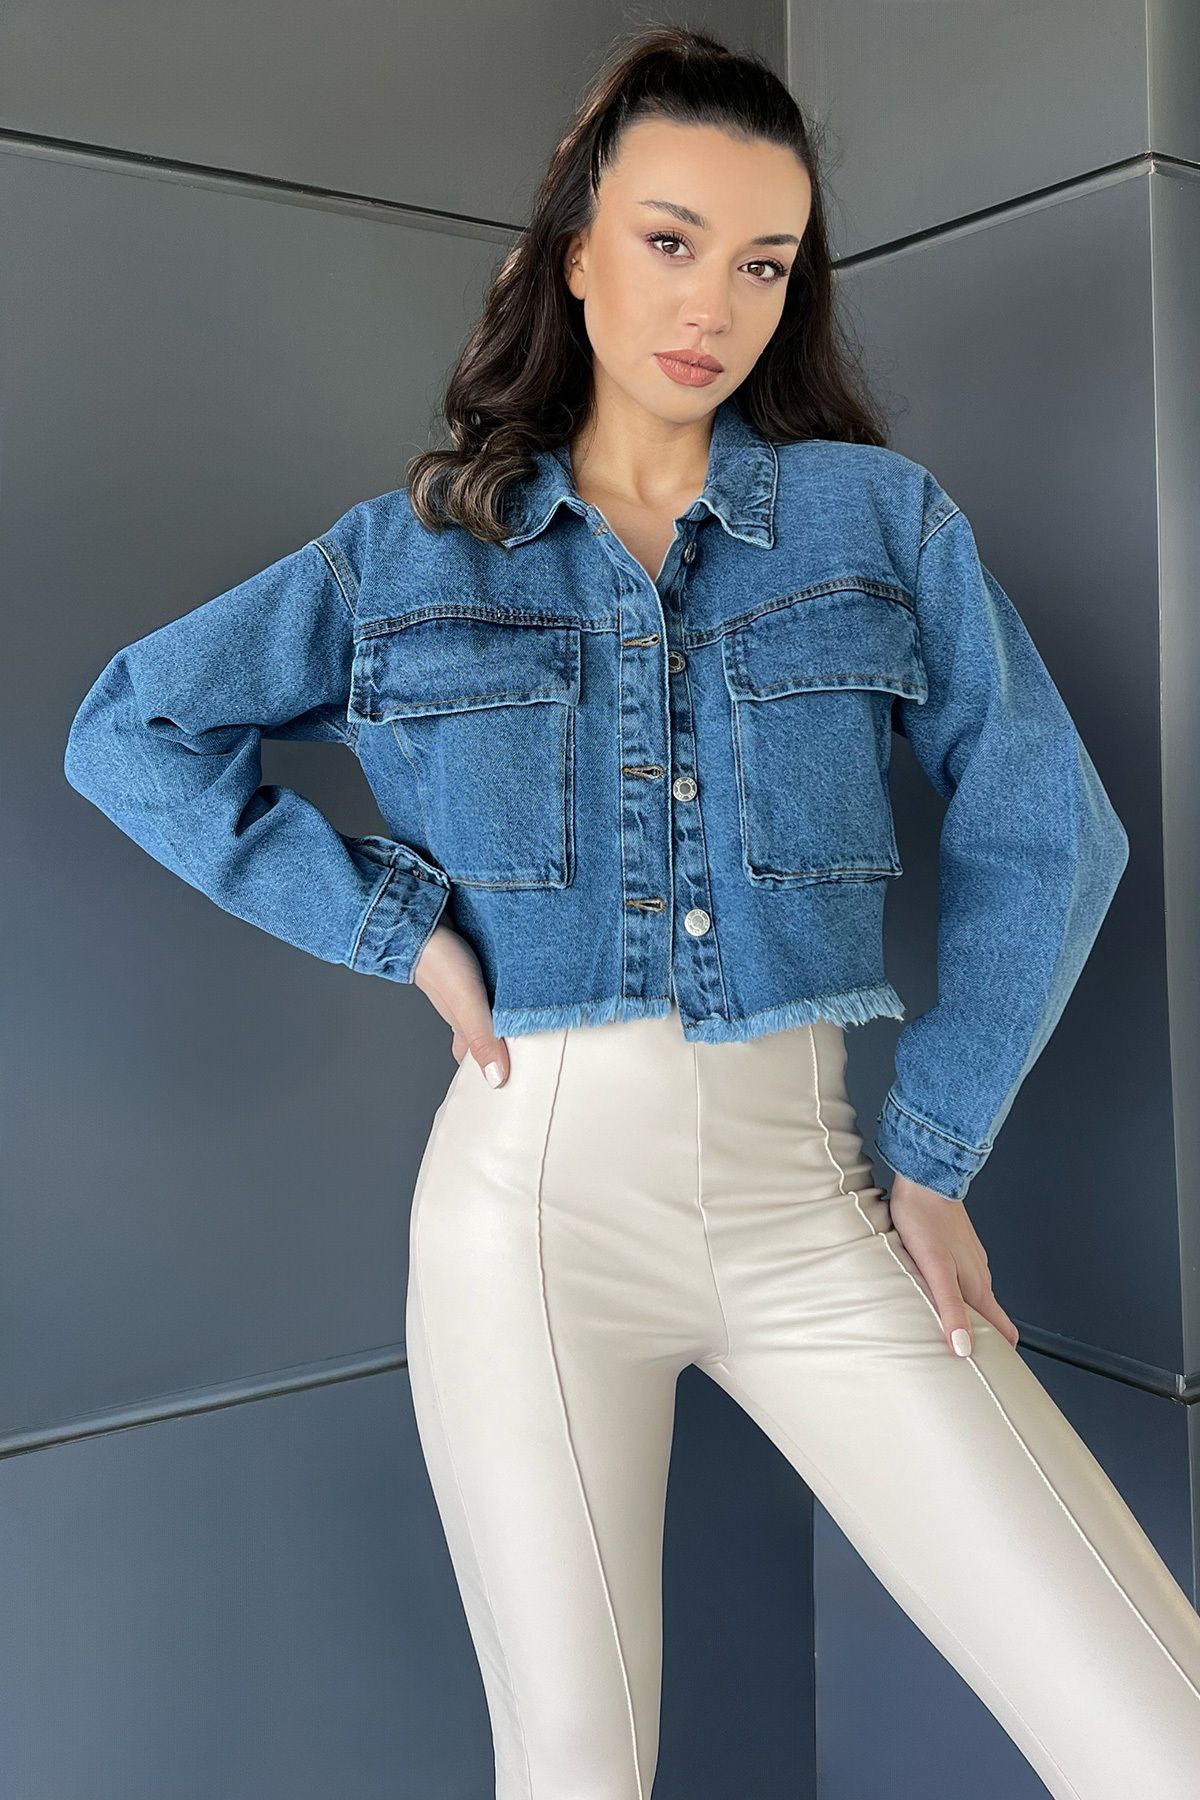 Julude Lacivert Çift Cepli Bitiş Püskül Detaylı Kadın Crop Top Jean Kot Ceket